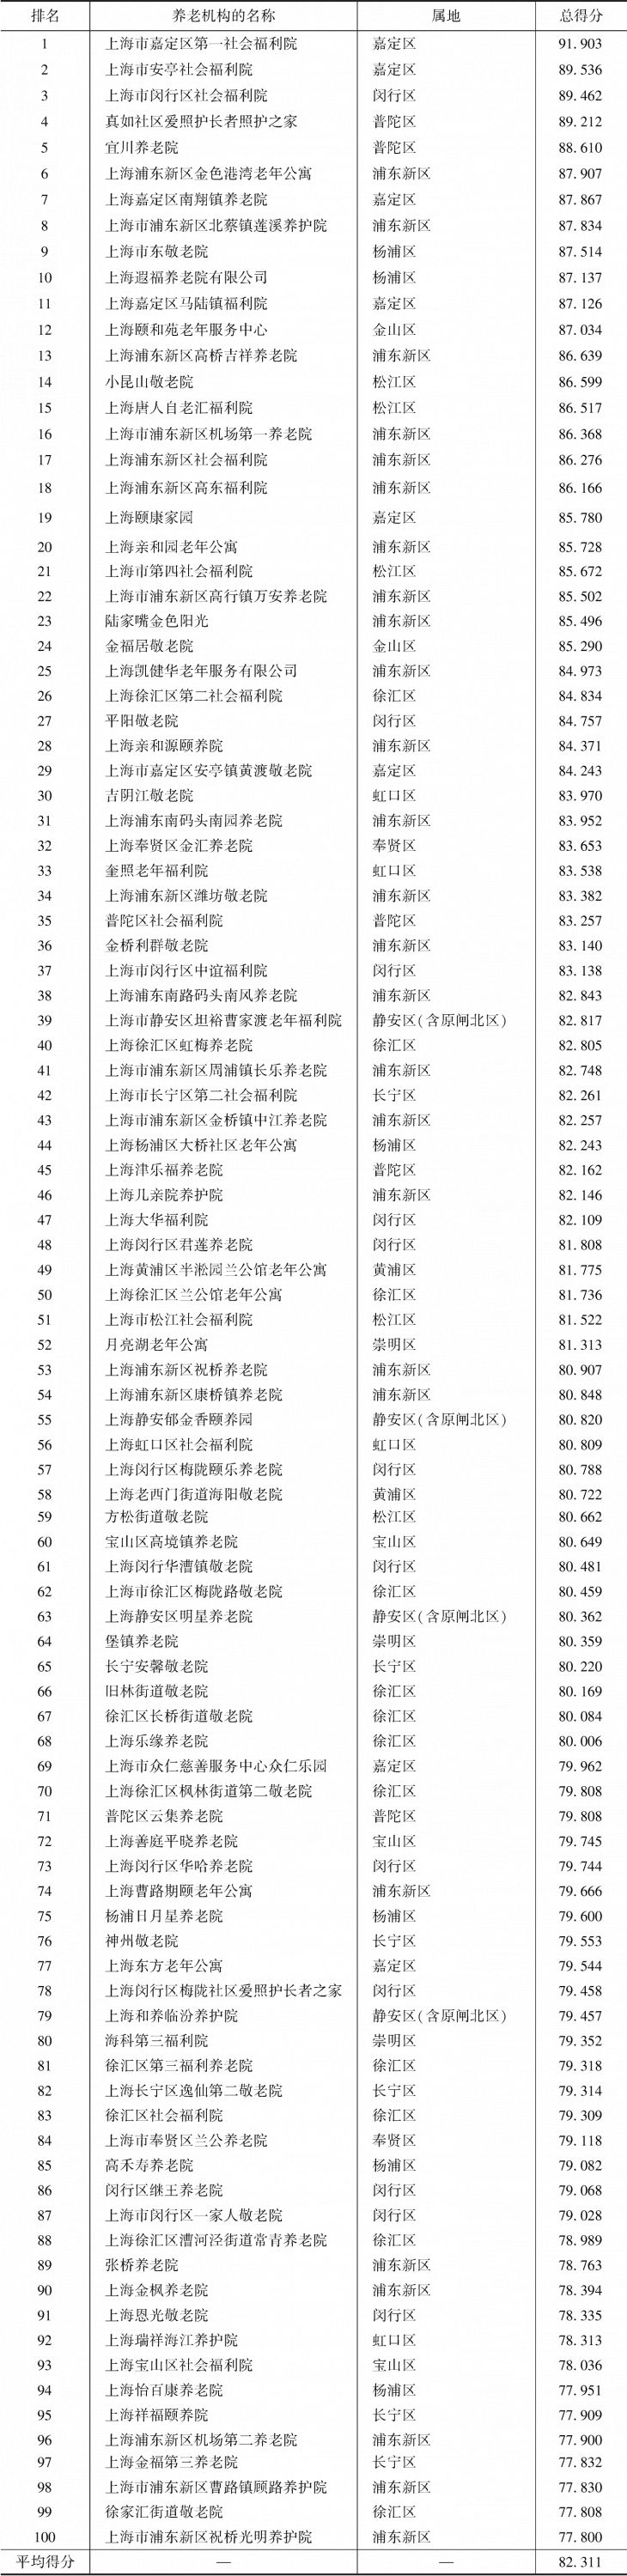 表4-1 上海市养老机构100强